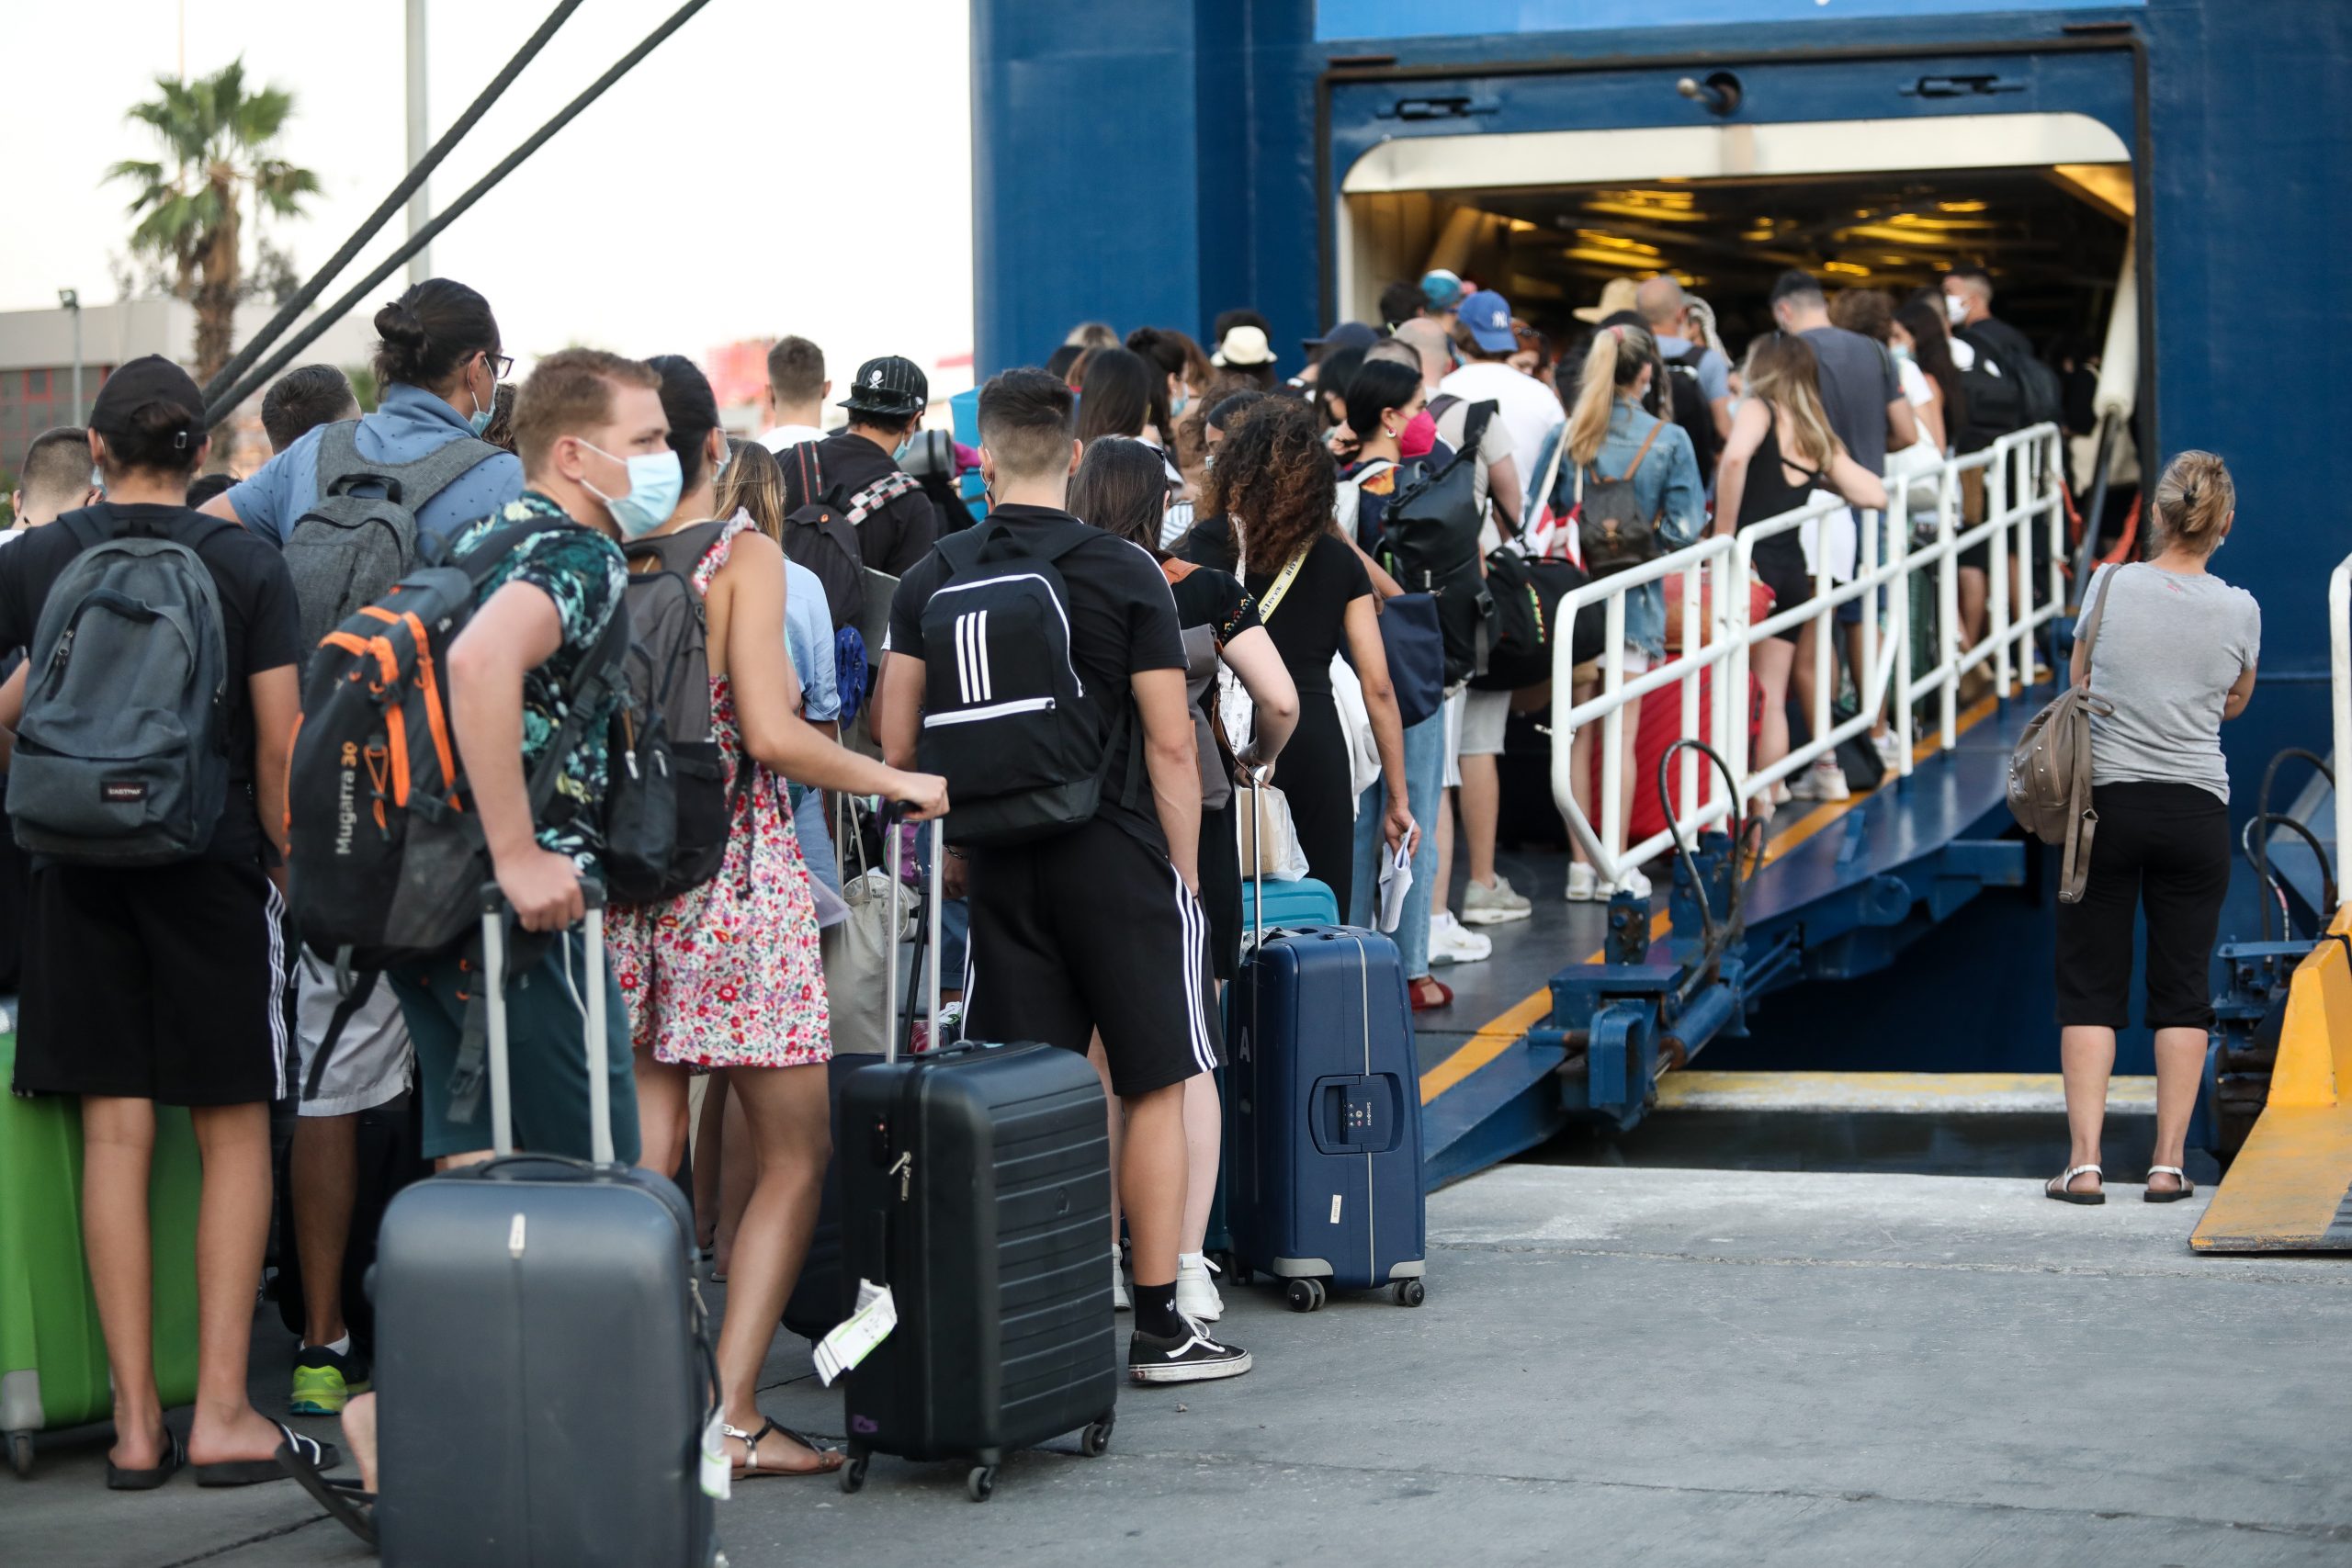 Έξοδος εκδρομέων: 23.564 επιβάτες αναχώρησαν από το λιμάνι του Πειραιά την Παρασκευή